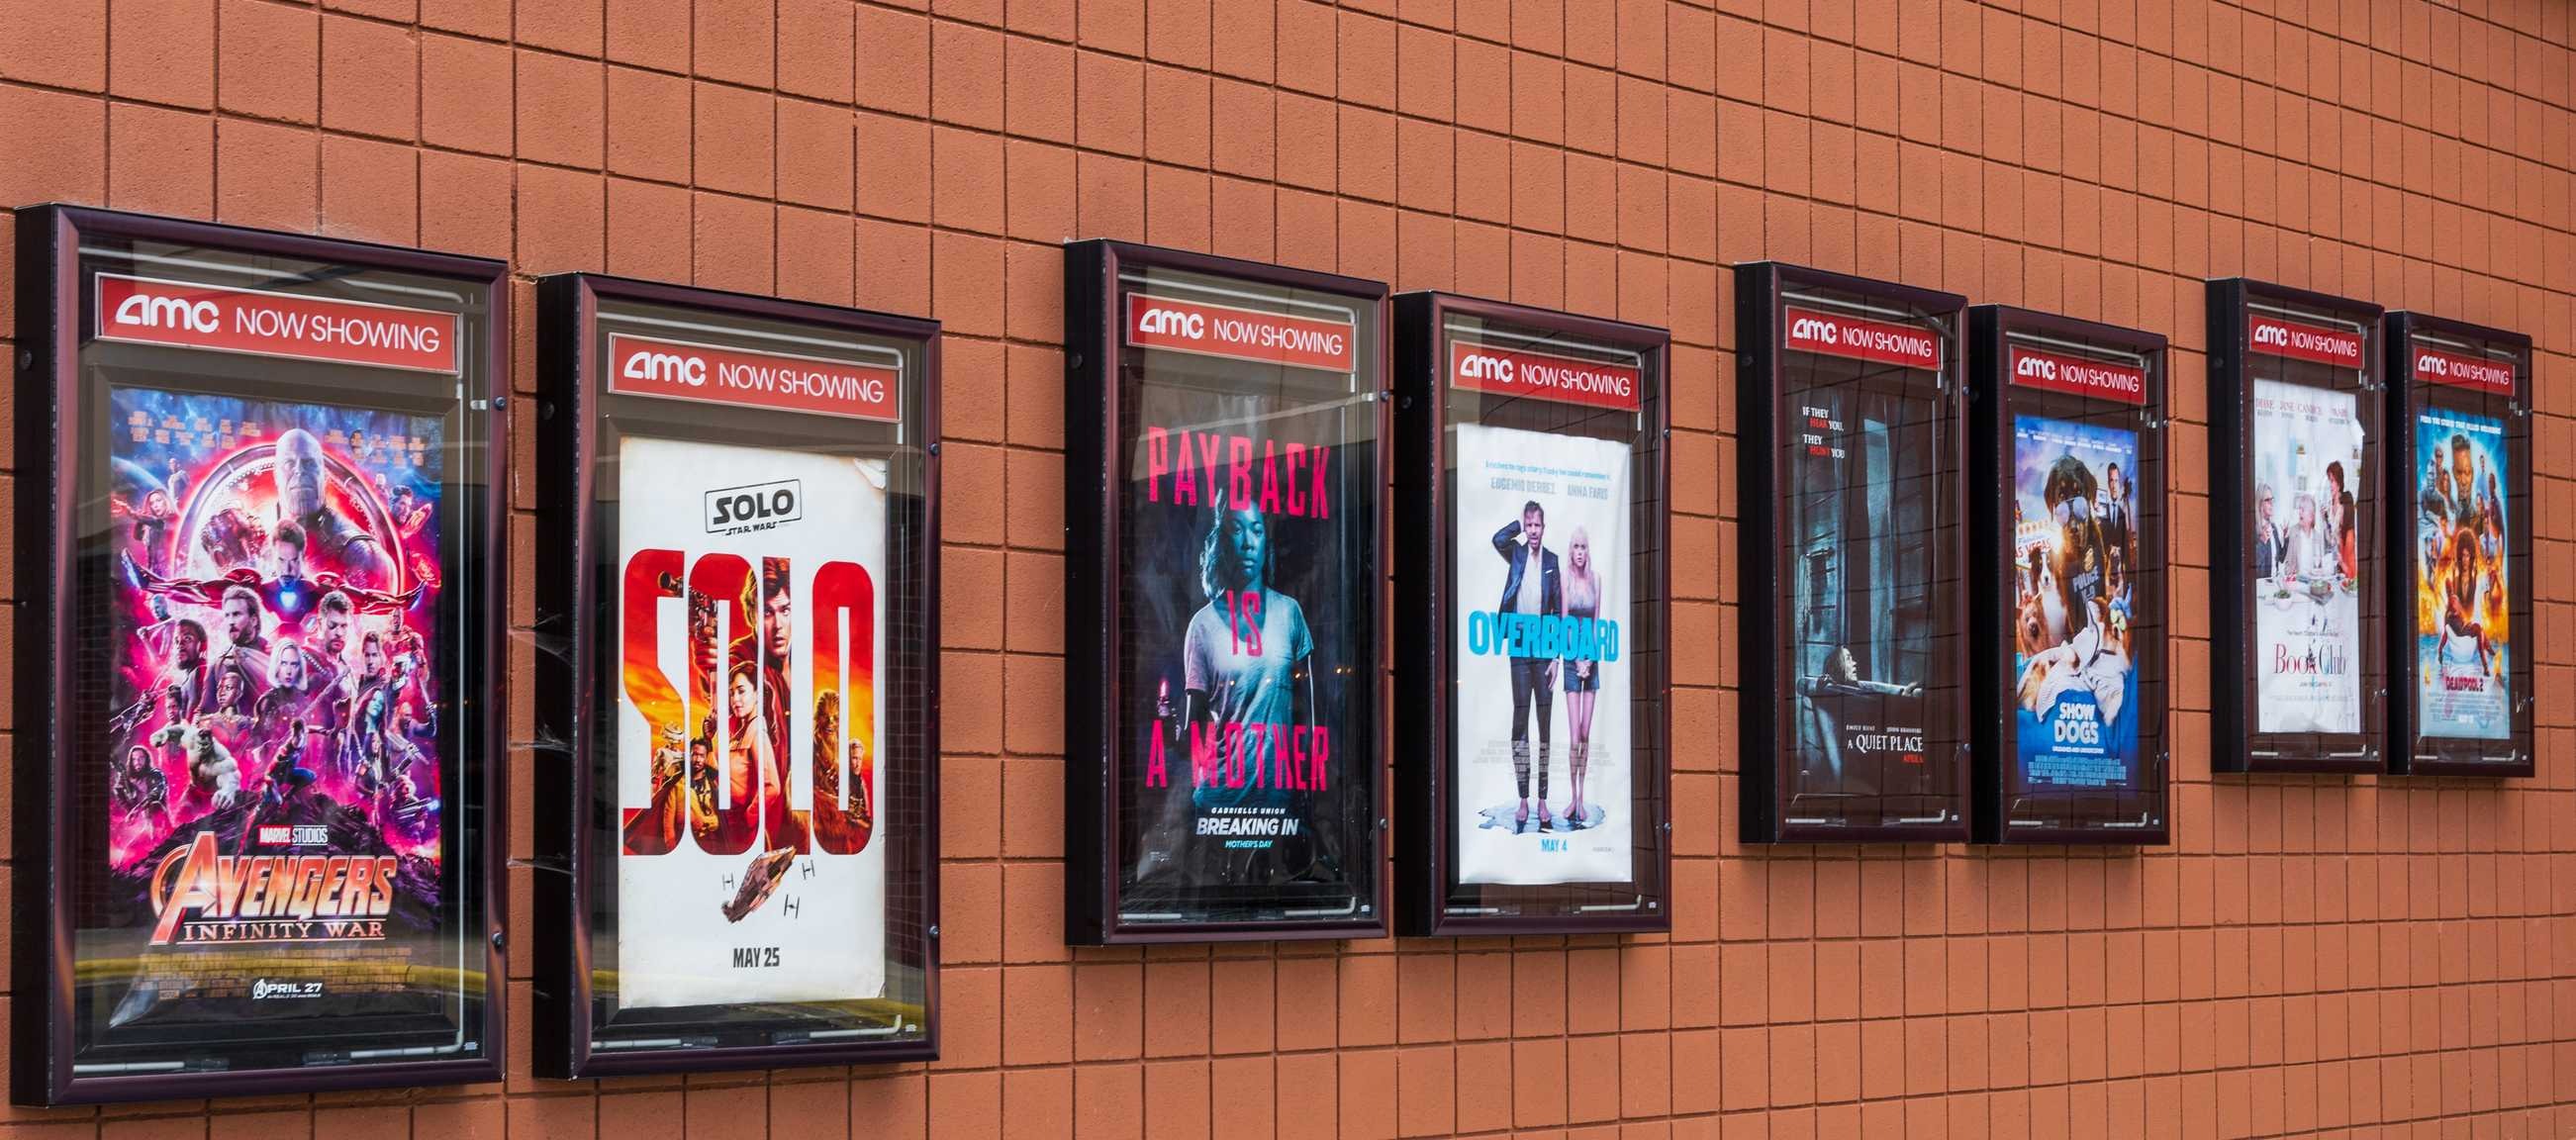 Des affiches de films dans le lobby d'un cinéma